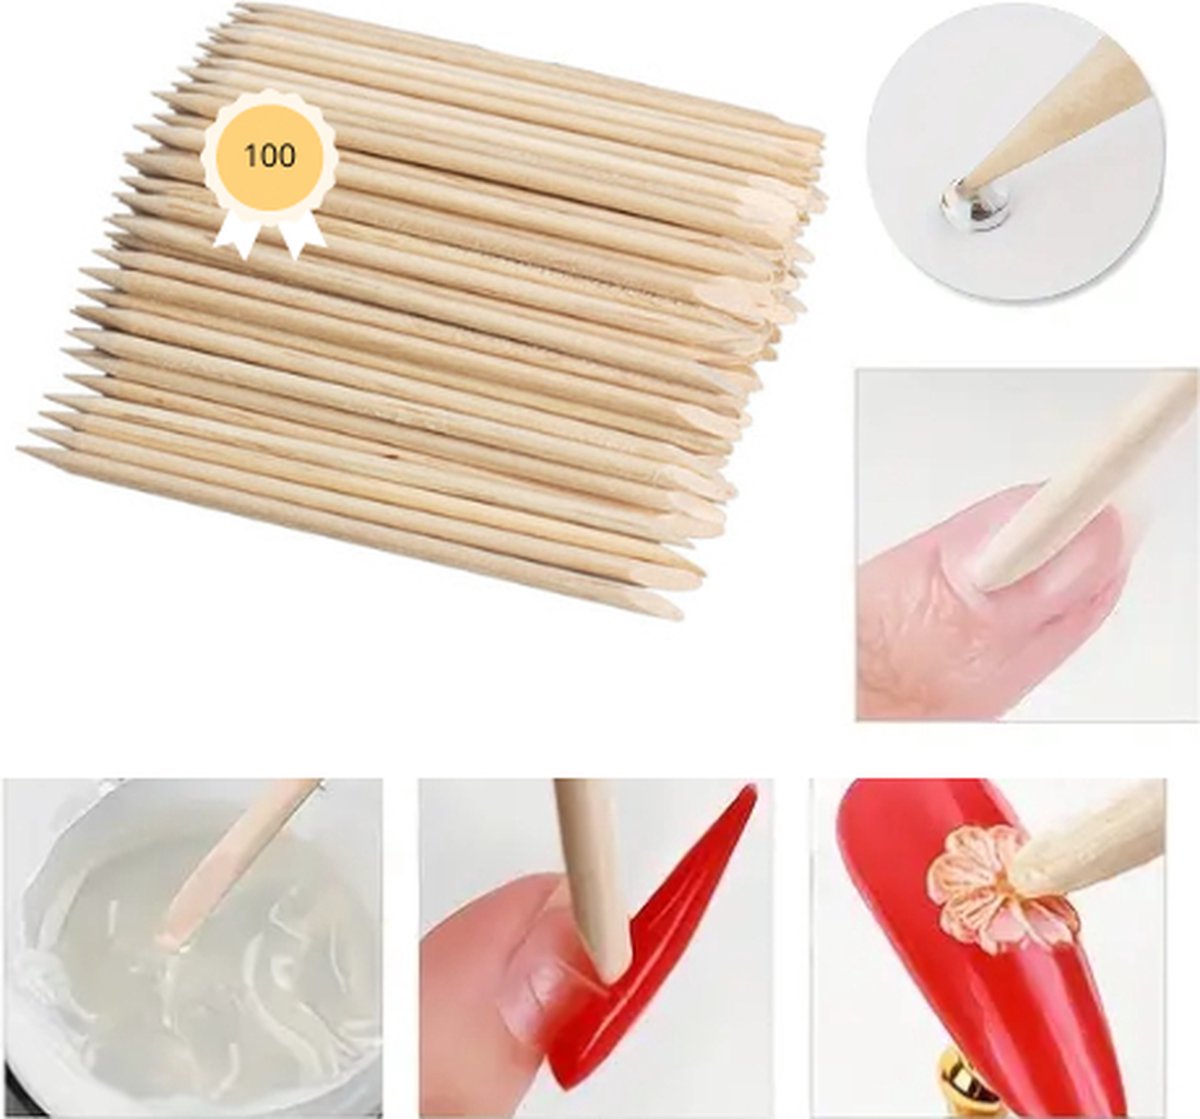 Nagelriemduwer - 100 stuks - 10,3 cm - Bokkenpootje nagels - Cuticle Puscher van Hout - Nagelriemverzorging - Stick voor nail art - Manicure - Nagelriem duwer - Bokkepootje - Tool